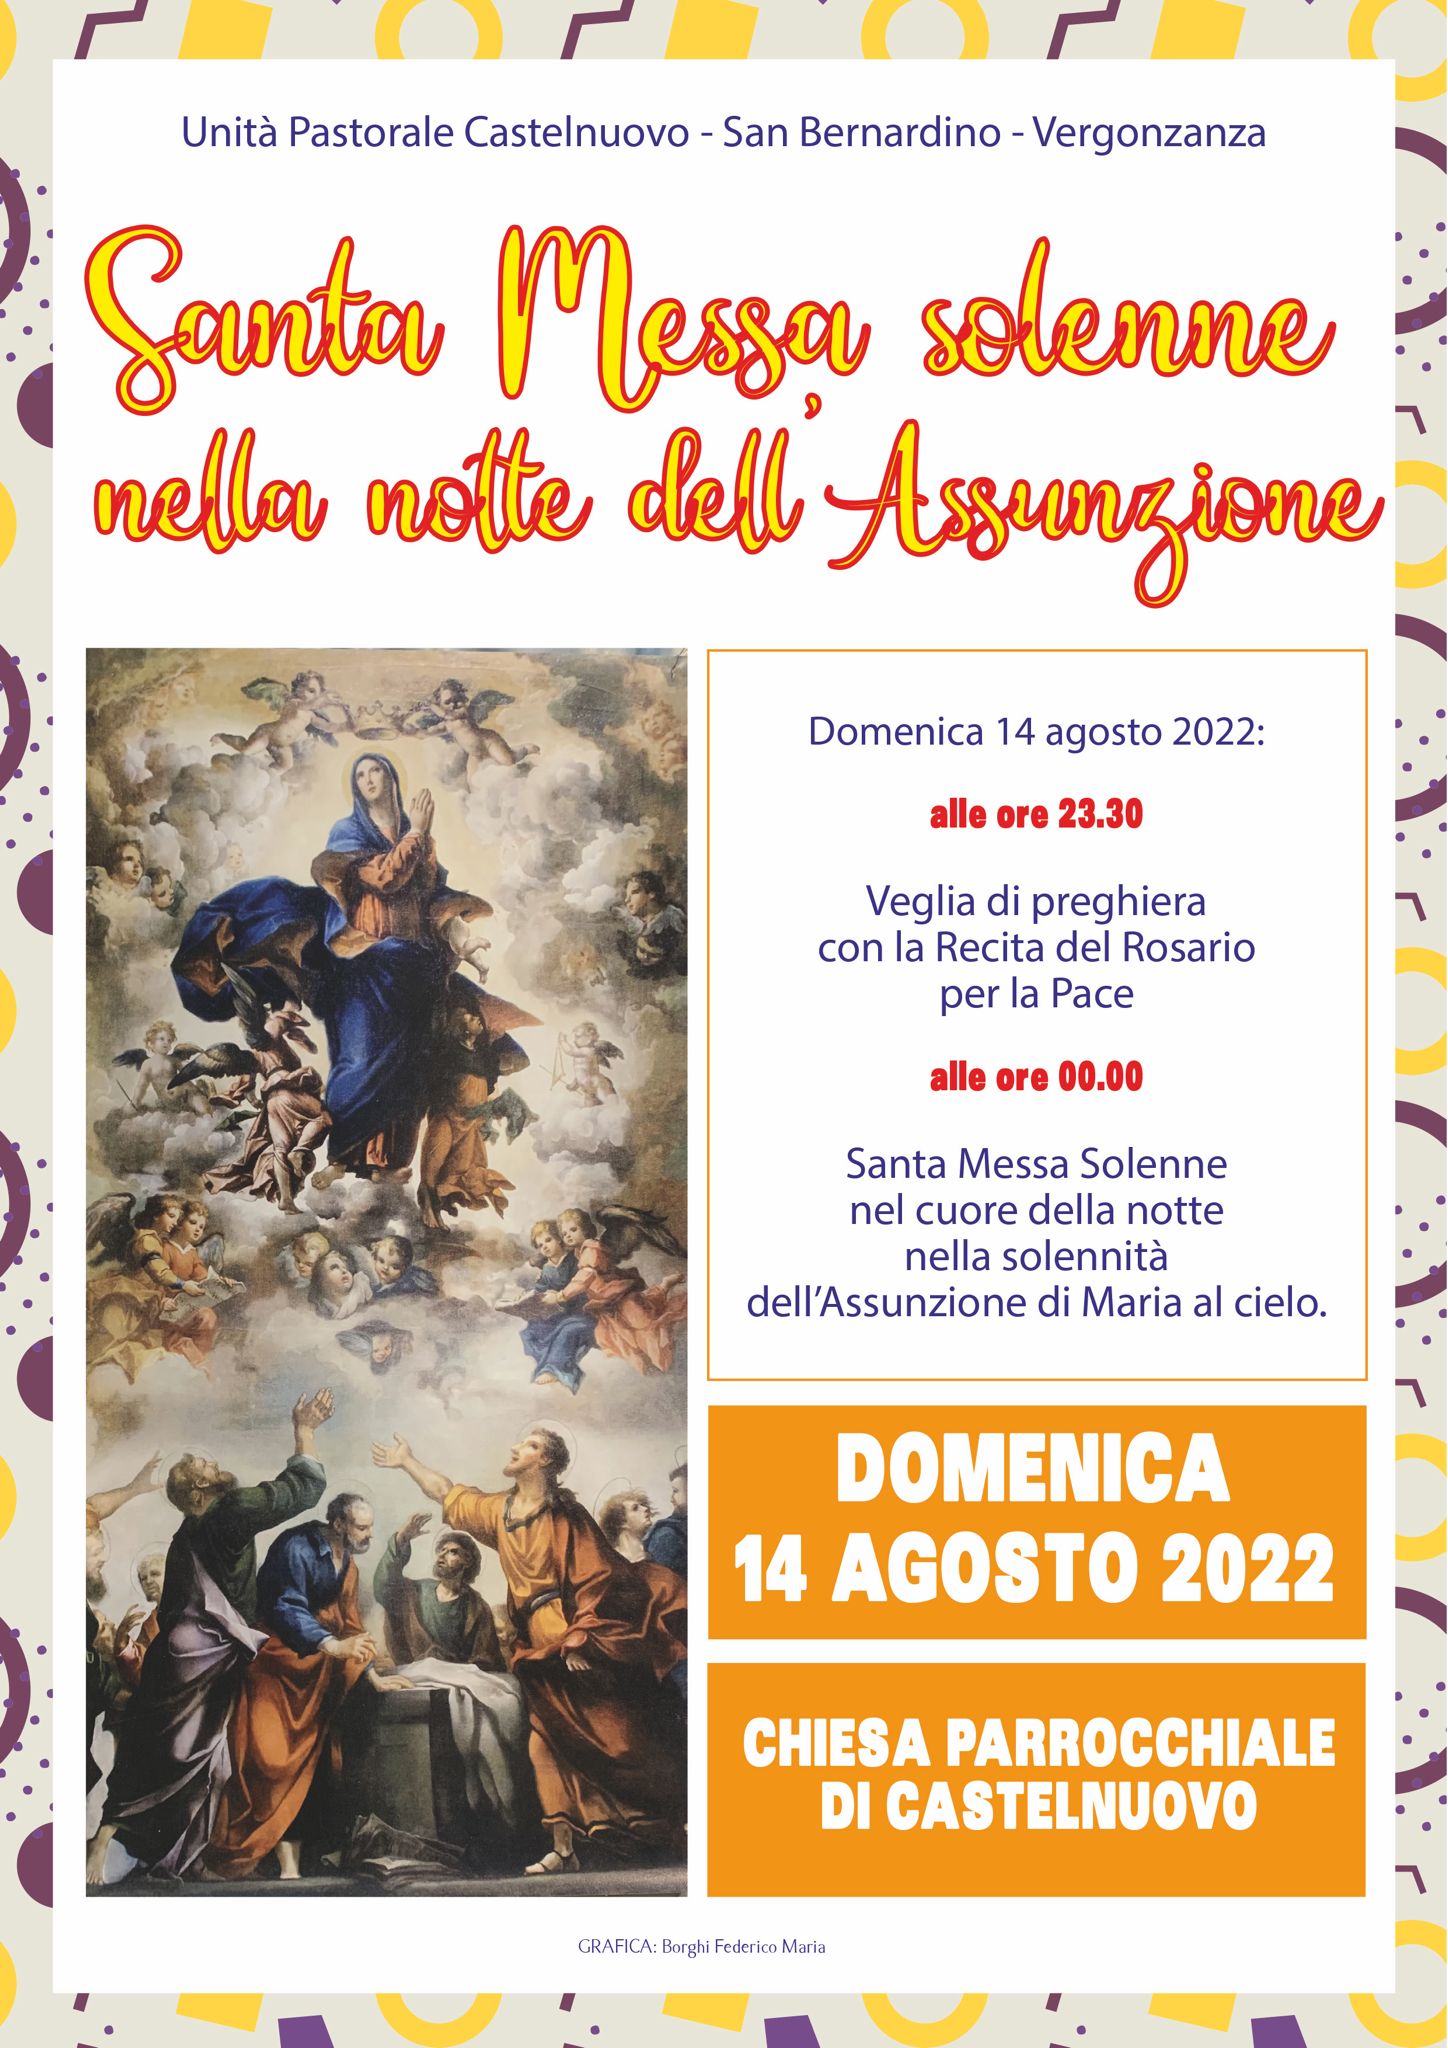 Don Lorenzo Roncali, con gioia, presenta la messa di Mezzanotte a Ferragosto